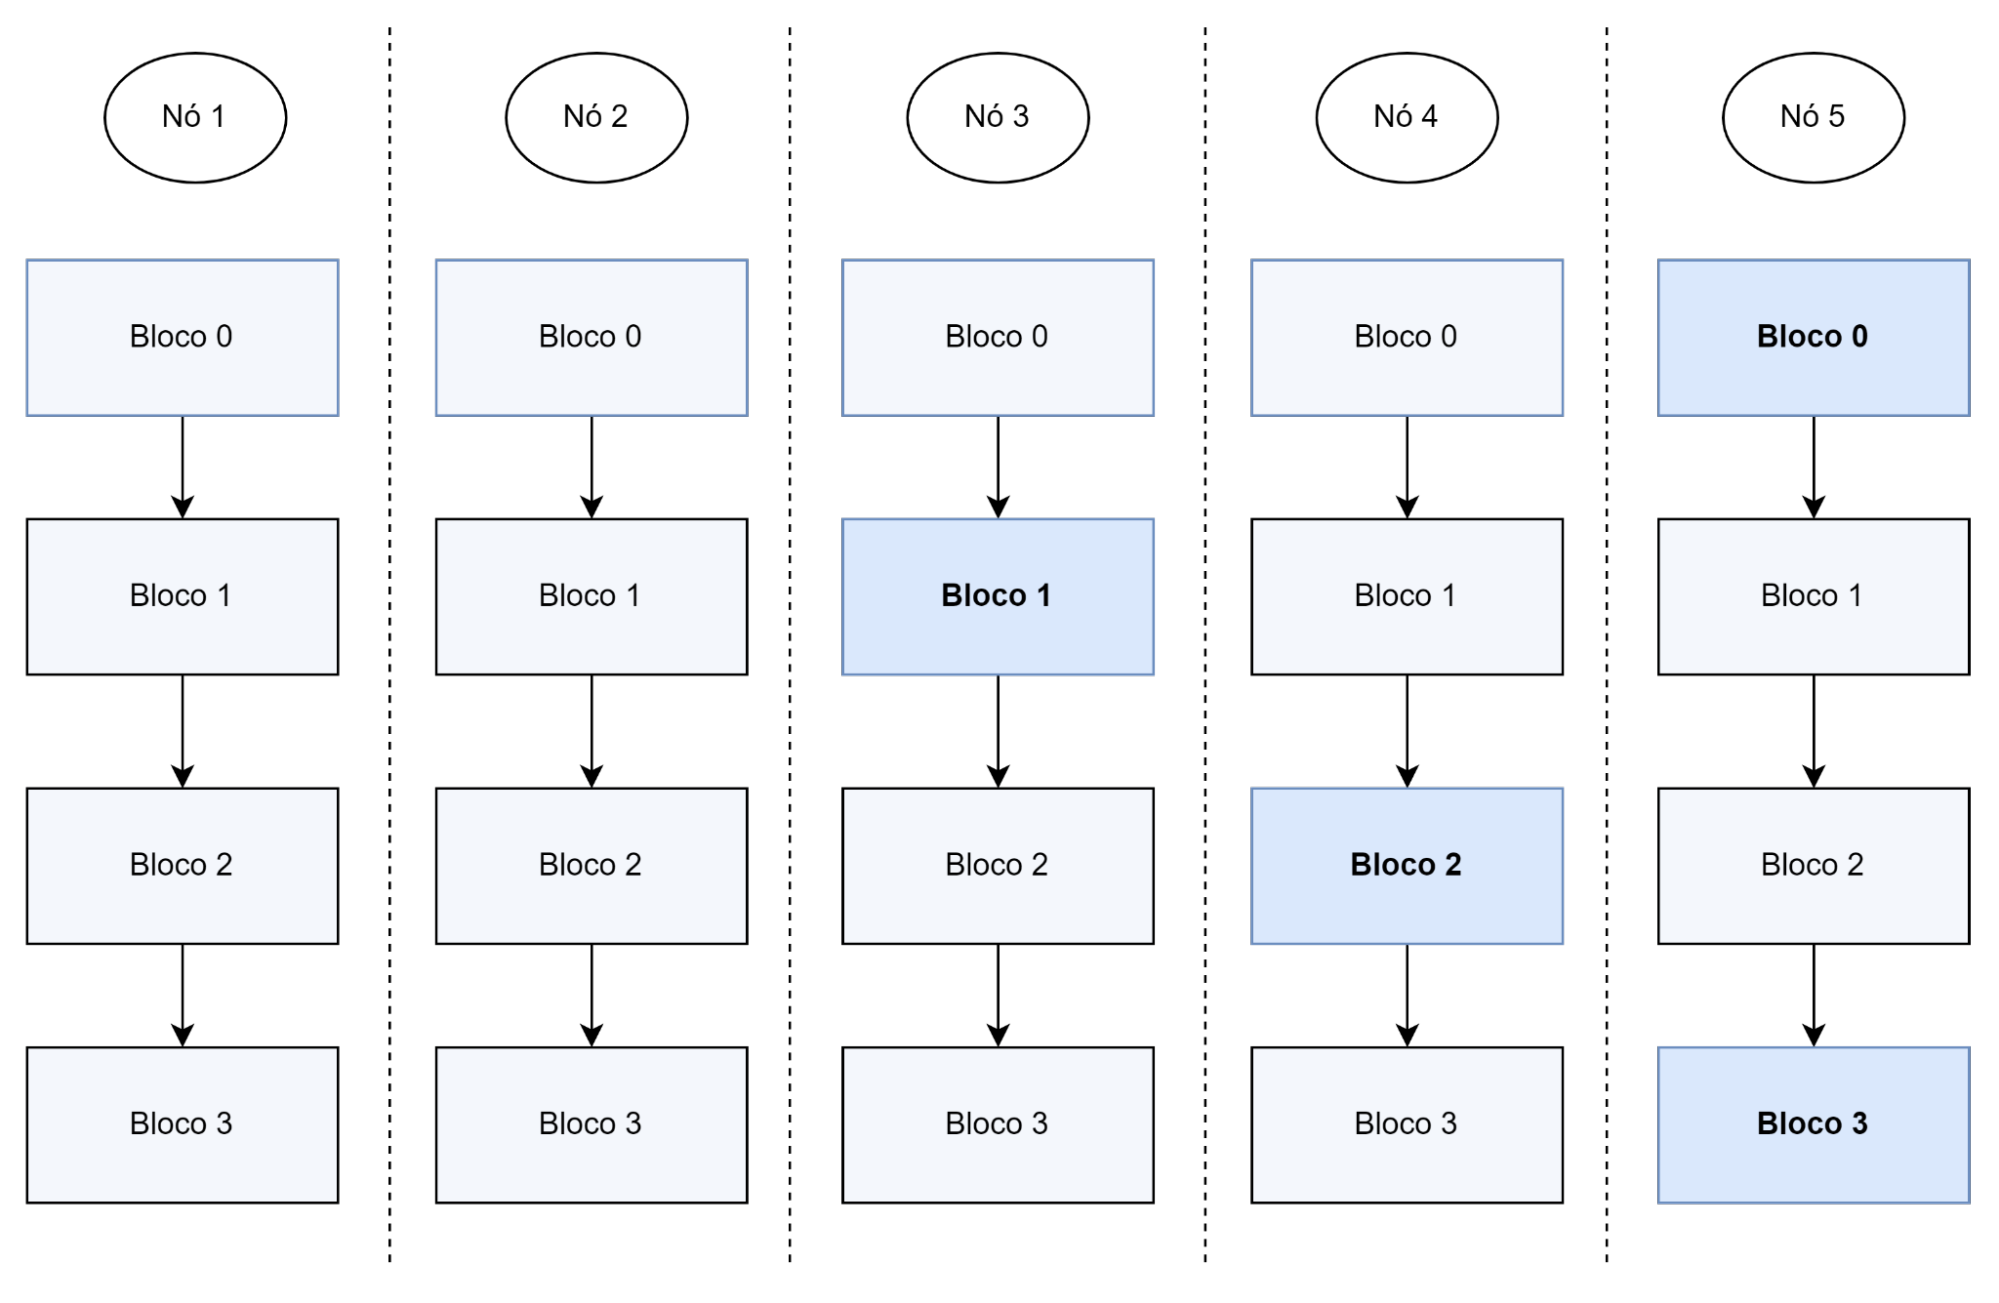 magem que contém cinco nós representados e abaixo de cada nó há uma sequência de quatro blocos formando uma matriz. Alguns blocos estão destacados nessa matriz: nó 5 - bloco 0; nó 3 - bloco 1; nó 4 - bloco 2; e nó 5 - bloco 3.